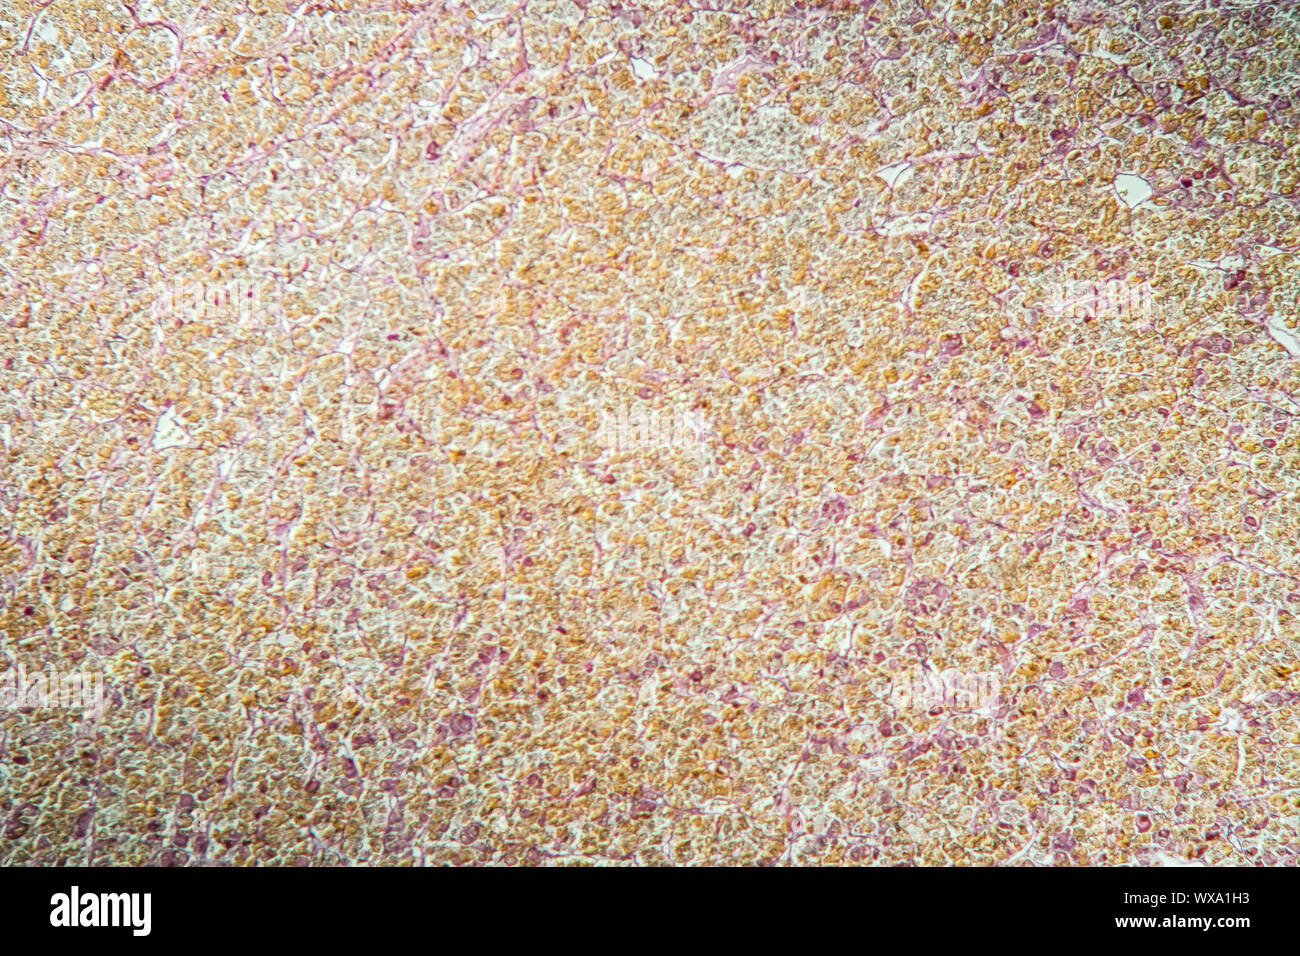 La ghiandola pituitaria ghiandola pituitaria sotto il microscopio 100x Foto Stock